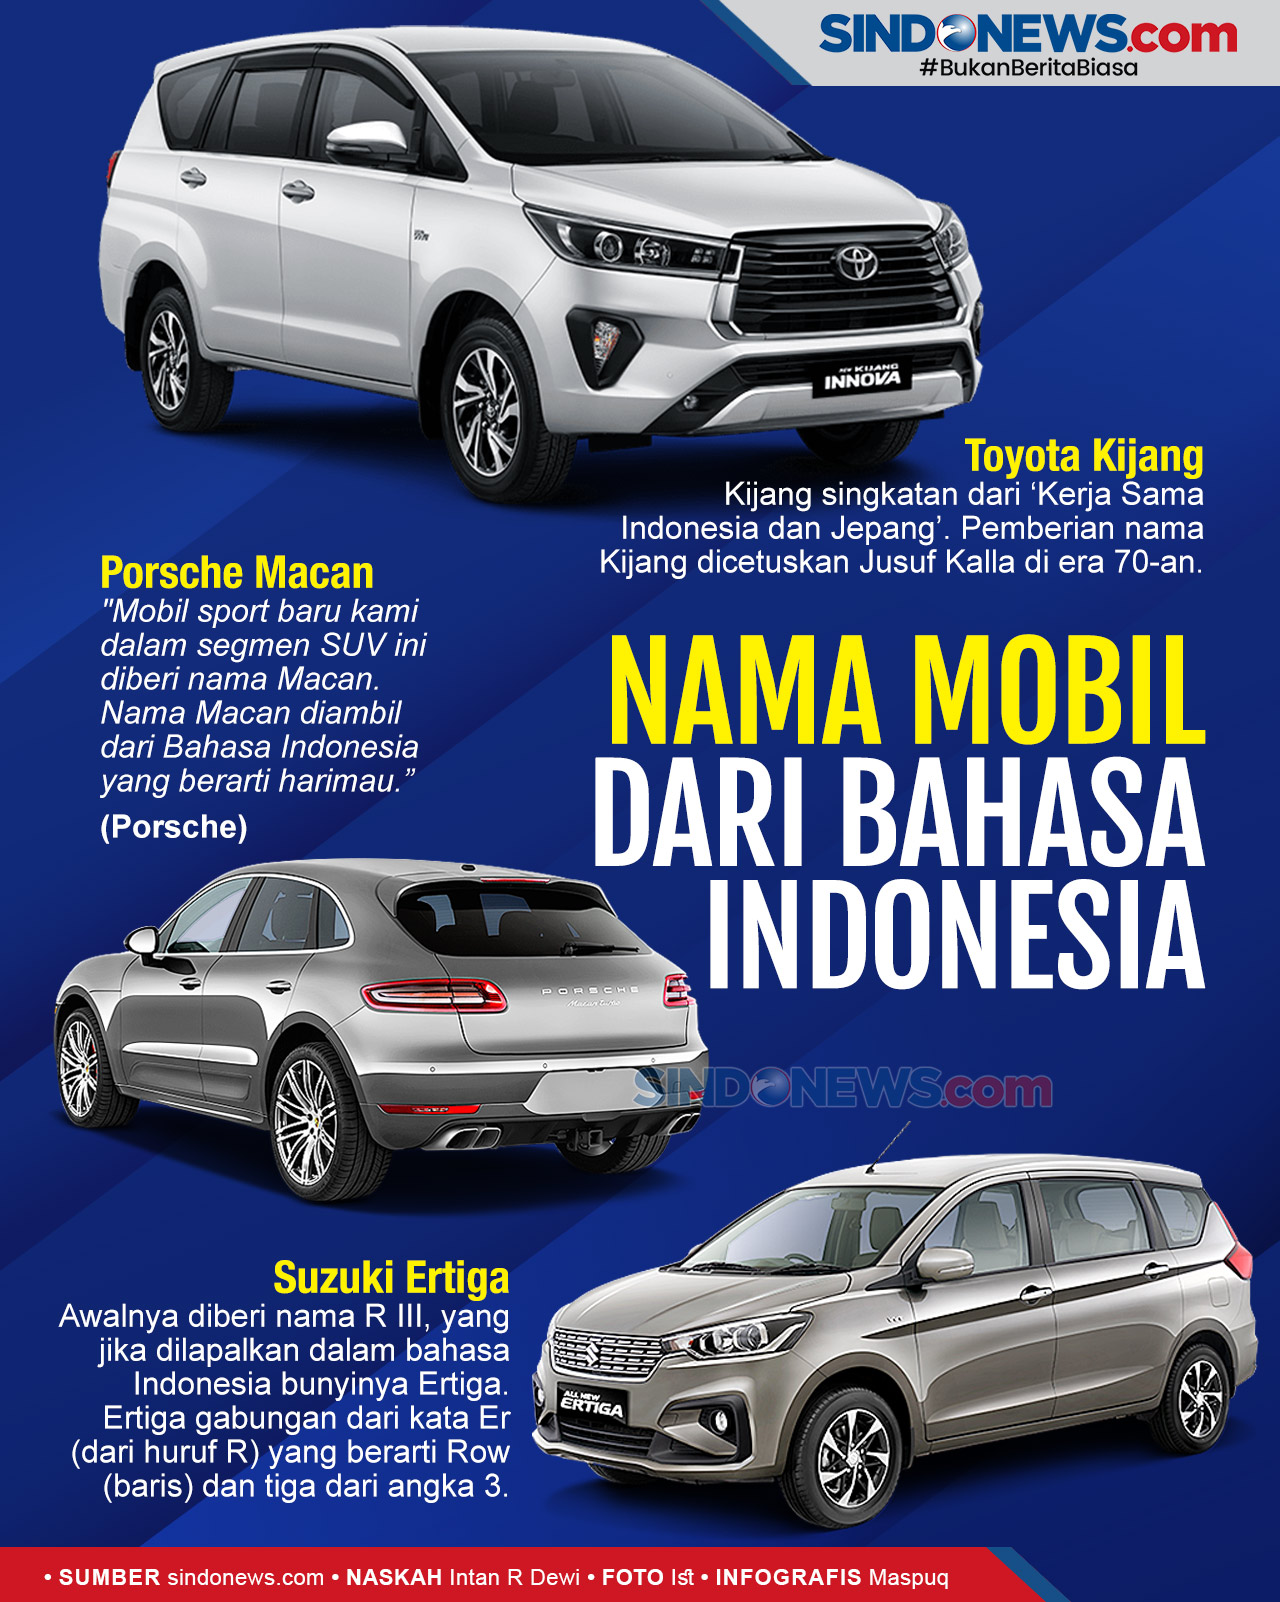 SINDOgrafis: Deretan Nama Mobil yang Diadopsi dari Bahasa Indonesia